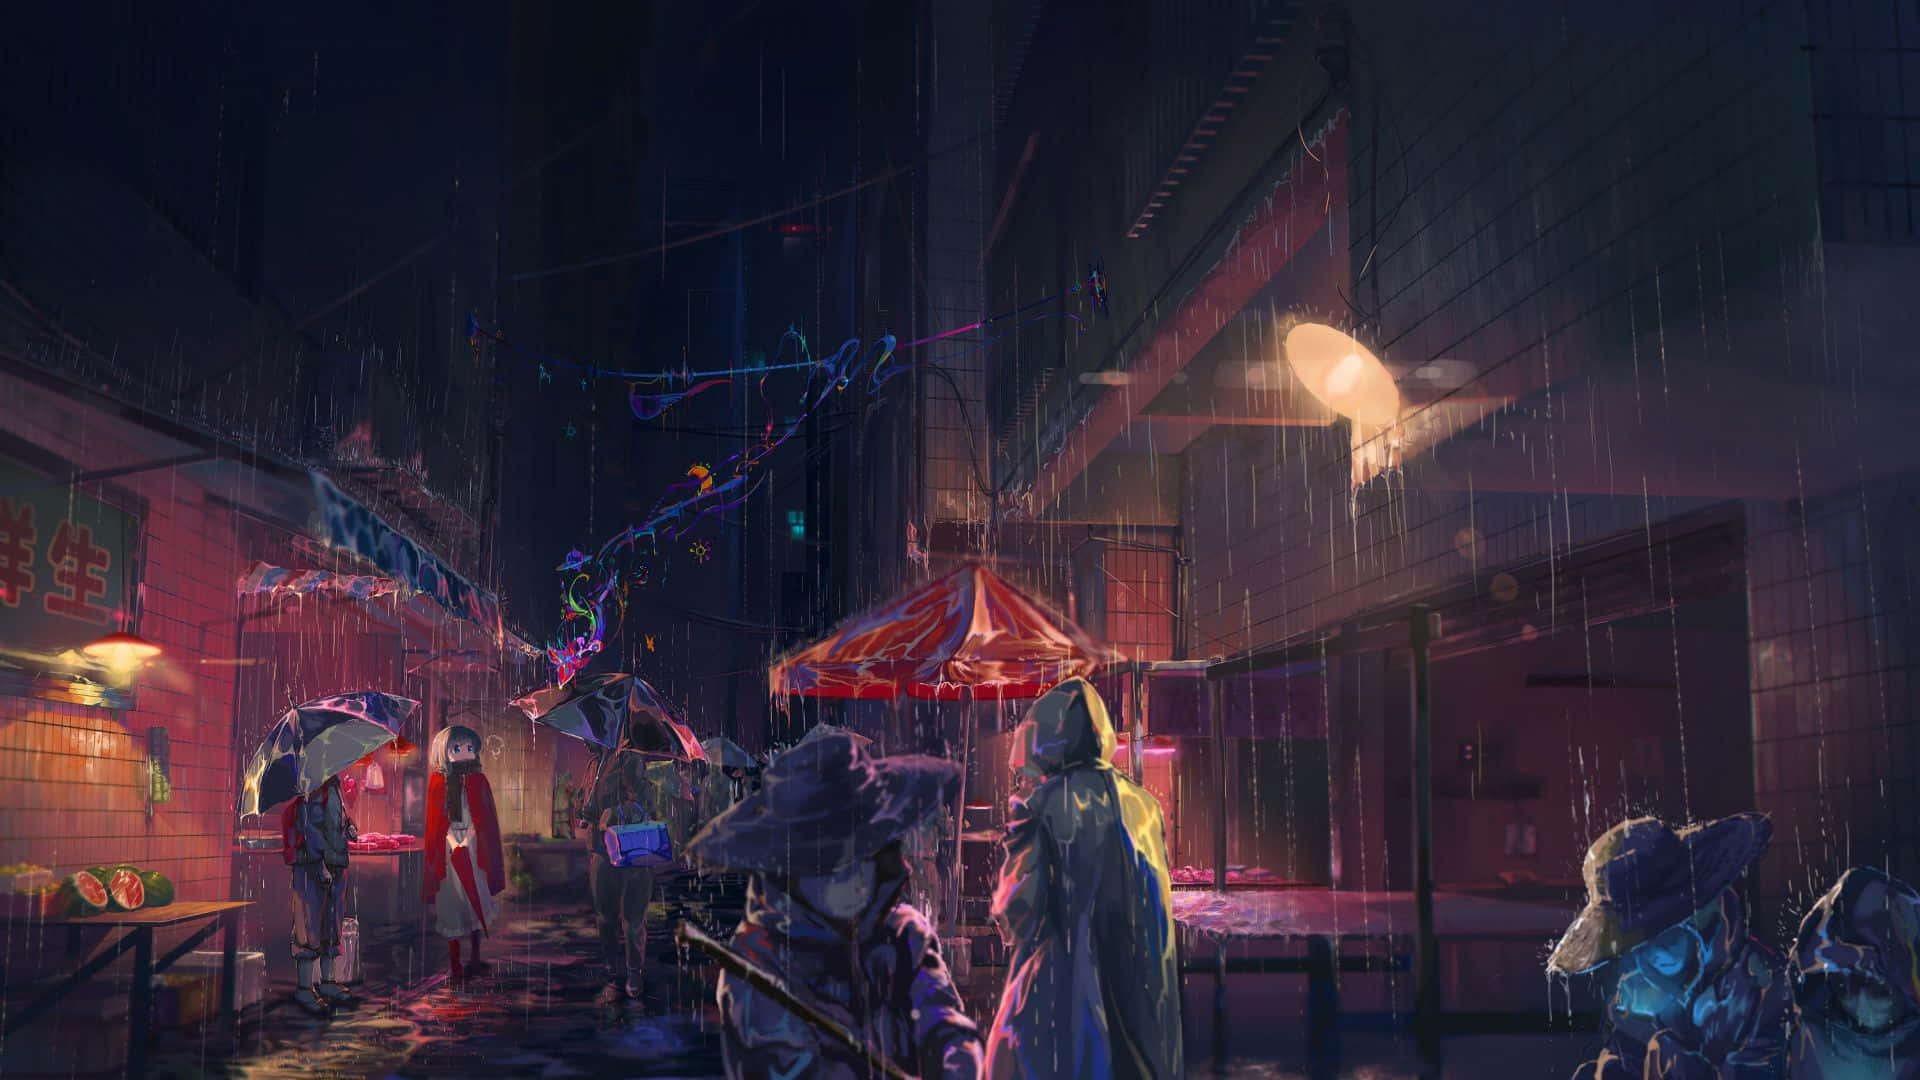 A Dark Street Scene With People Walking In The Rain Wallpaper